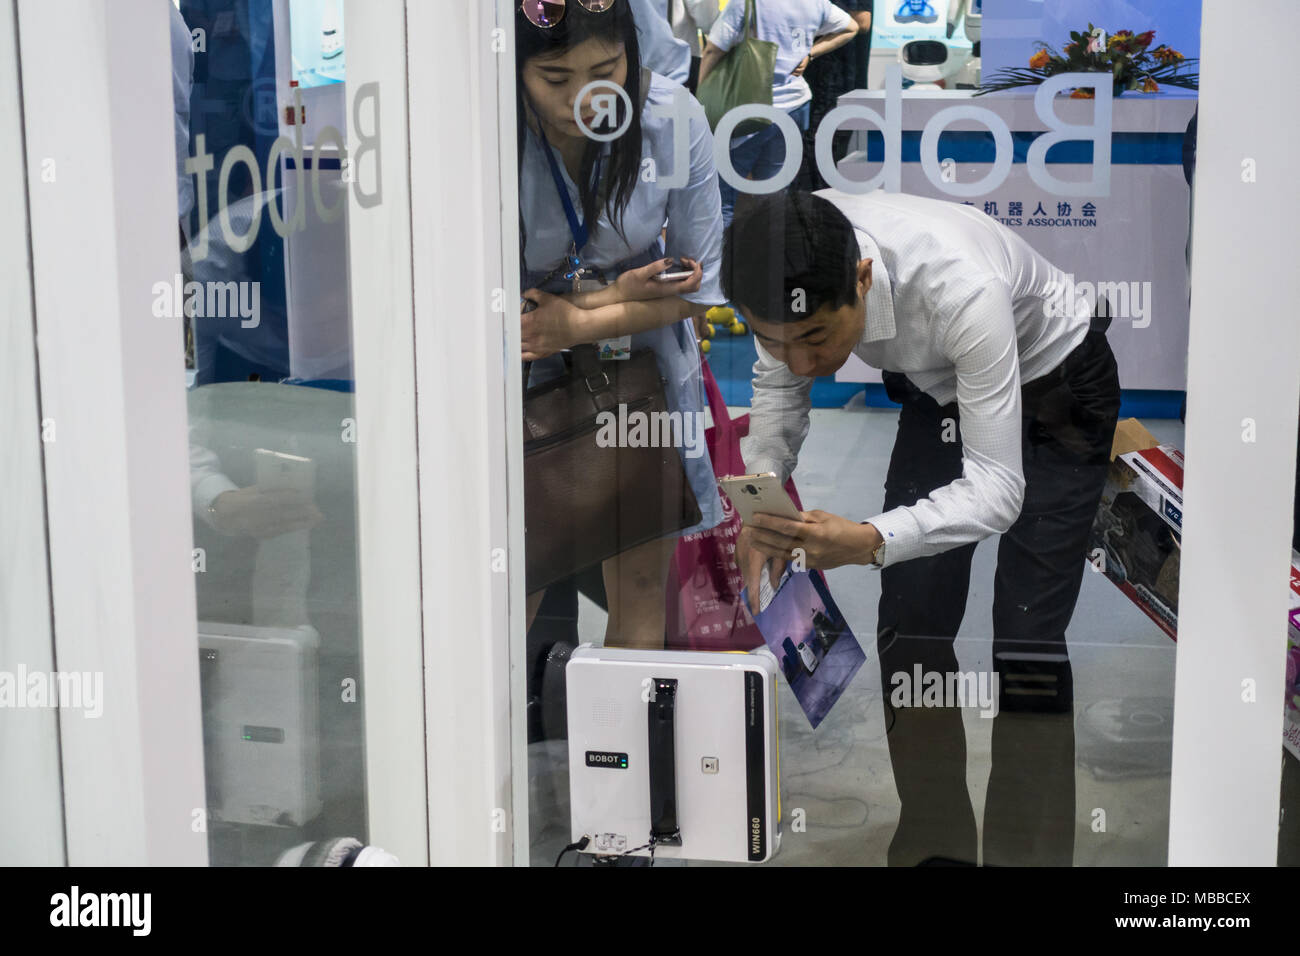 (Hoover aspirateur robot) fonctionnant à technologie équitable à Shenzhen, Chine. Banque D'Images